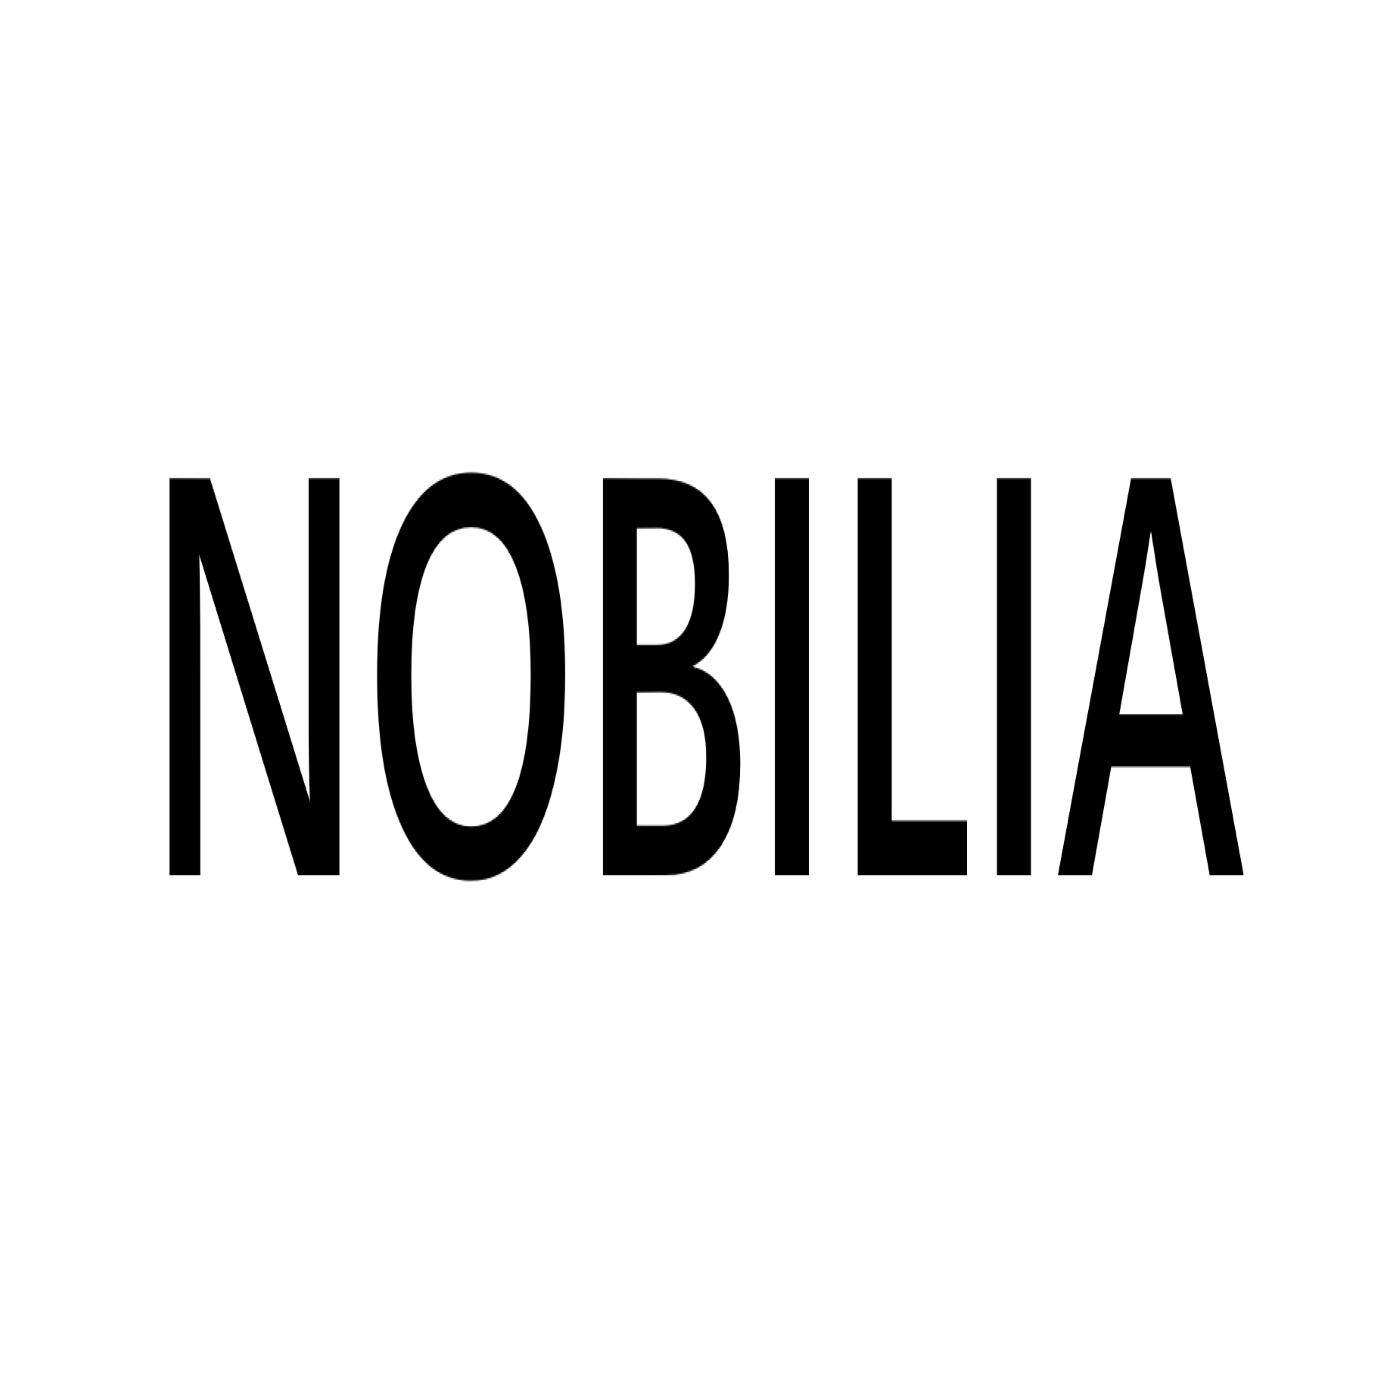 NOBILIA